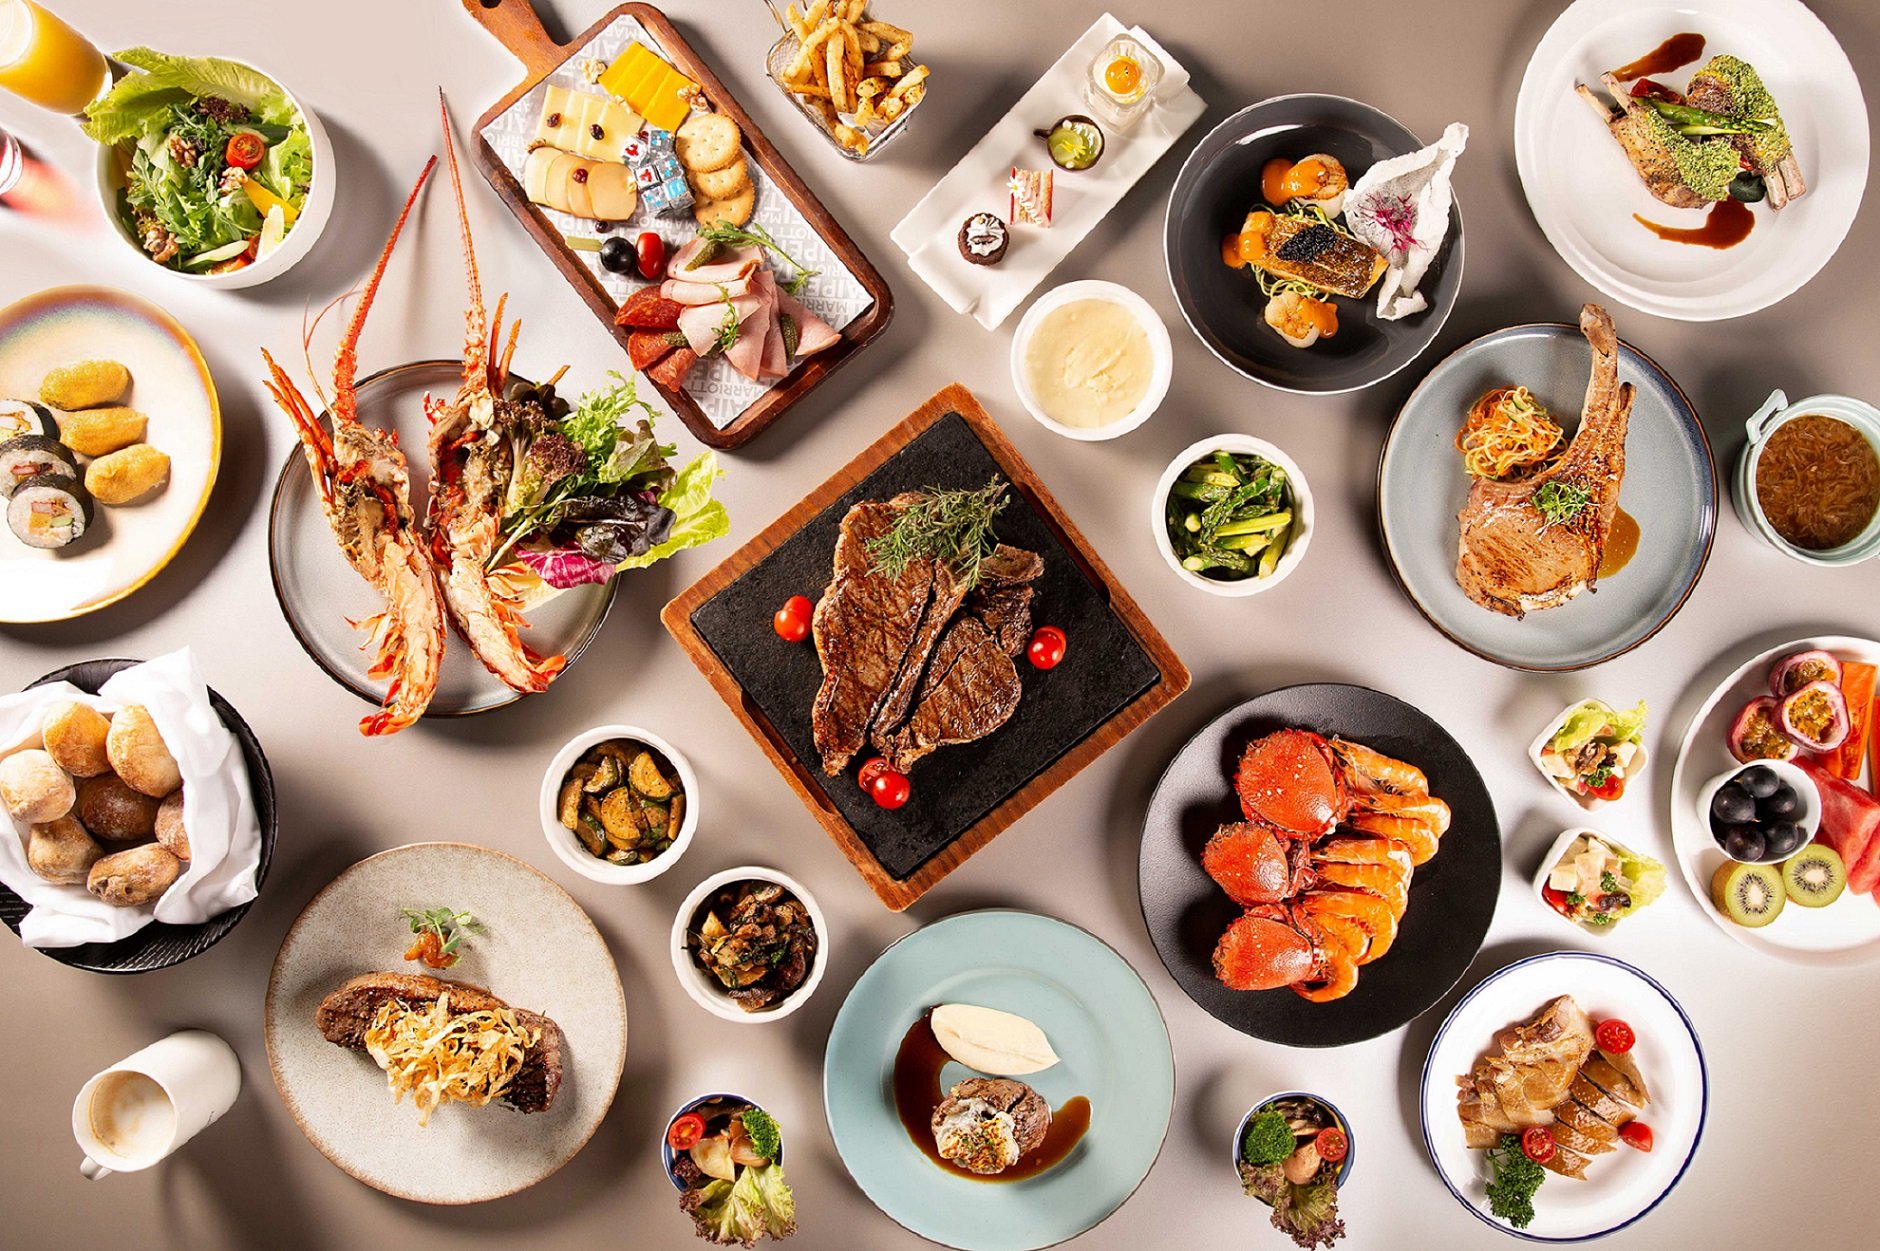 台北萬豪 Garden Kitchen 推出「主餐 1+1」優惠 週一至三雙人同行 主餐買一送一